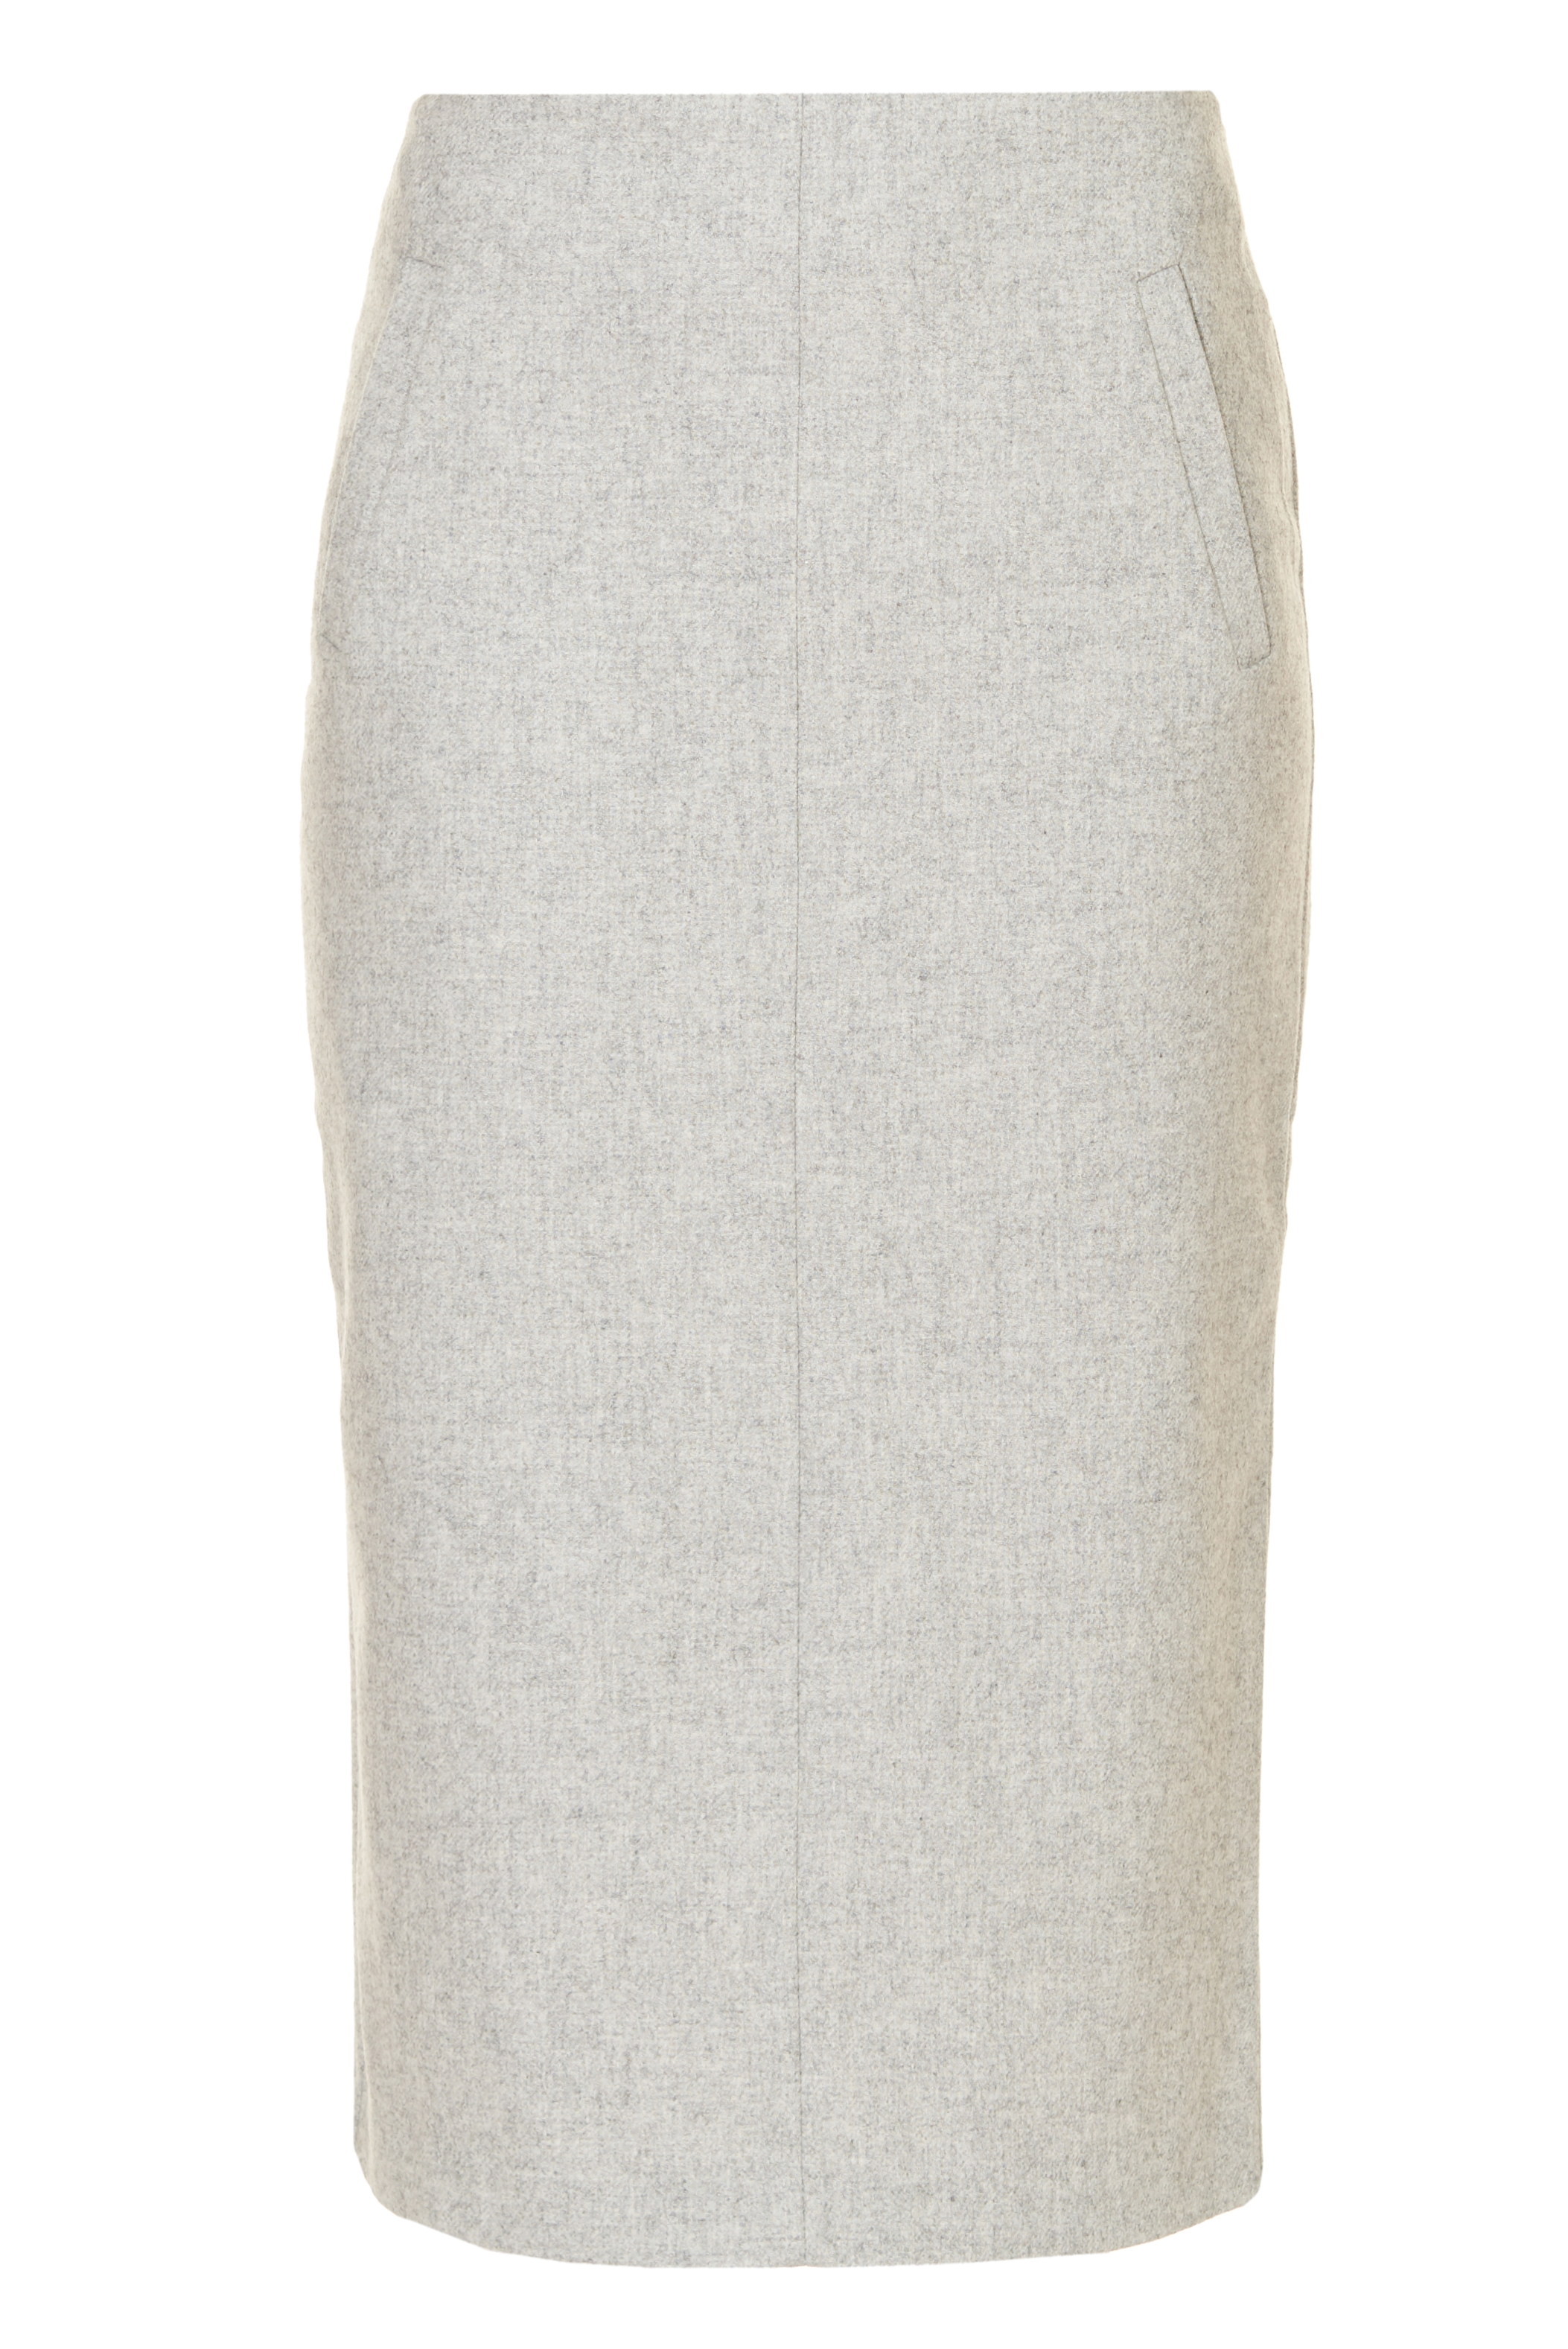 Прямая юбка с шерстью (арт. baon B477522), размер S, цвет silver melange#серый Прямая юбка с шерстью (арт. baon B477522) - фото 3